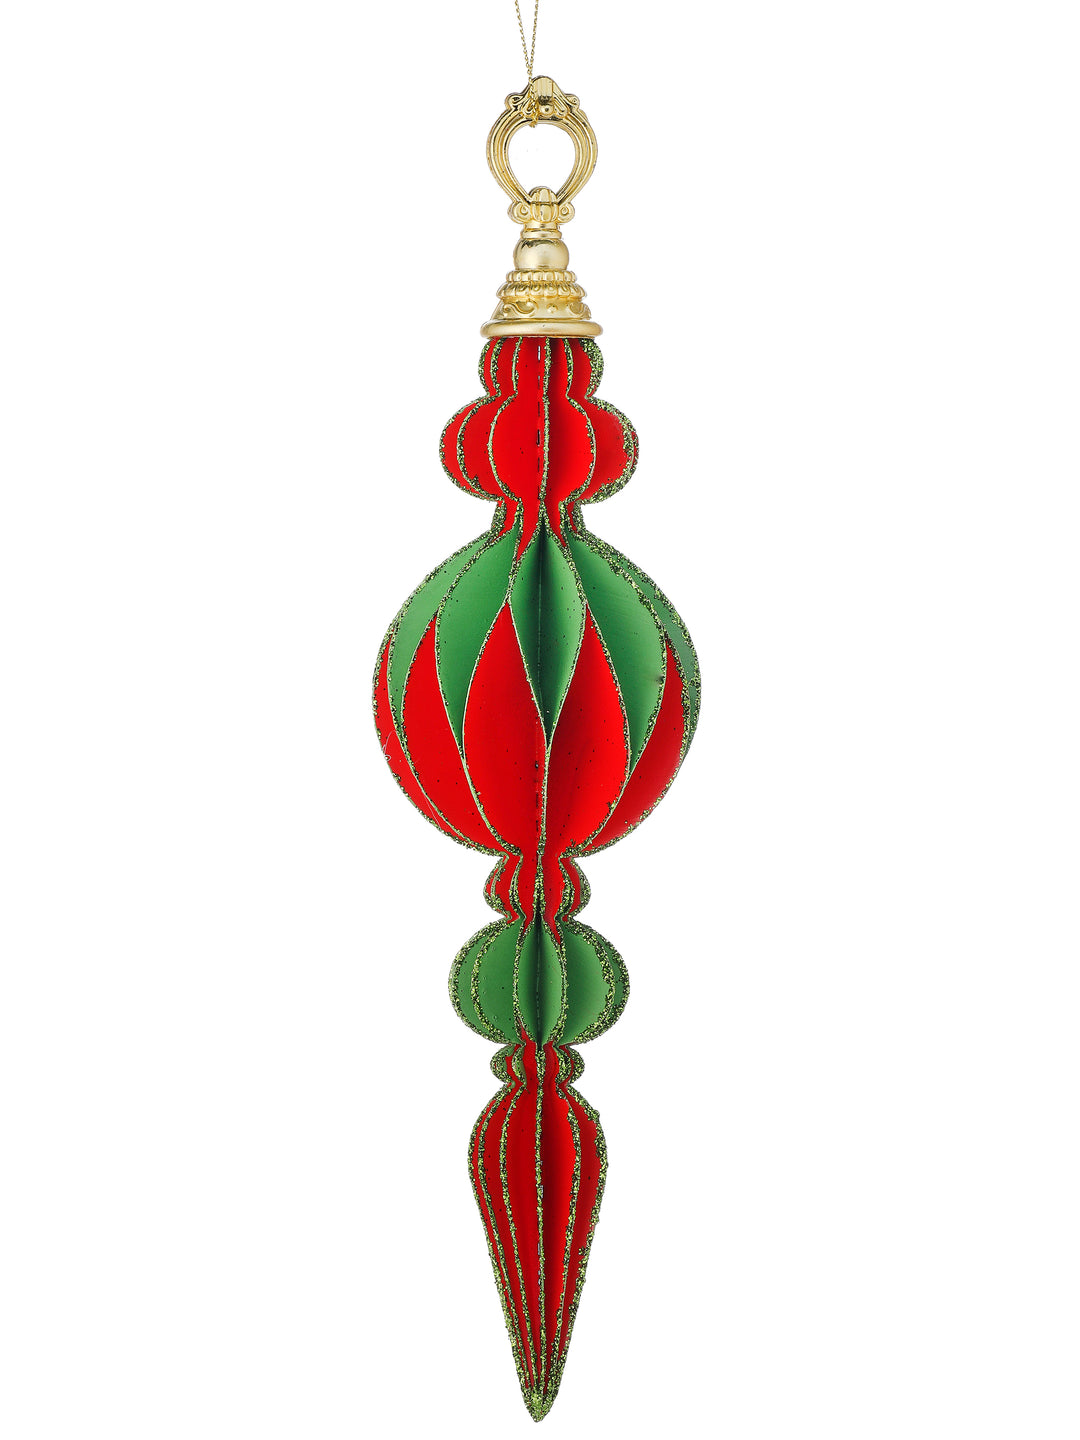 Regency 11.75" Cardboard Finial Ornament in Red/Green